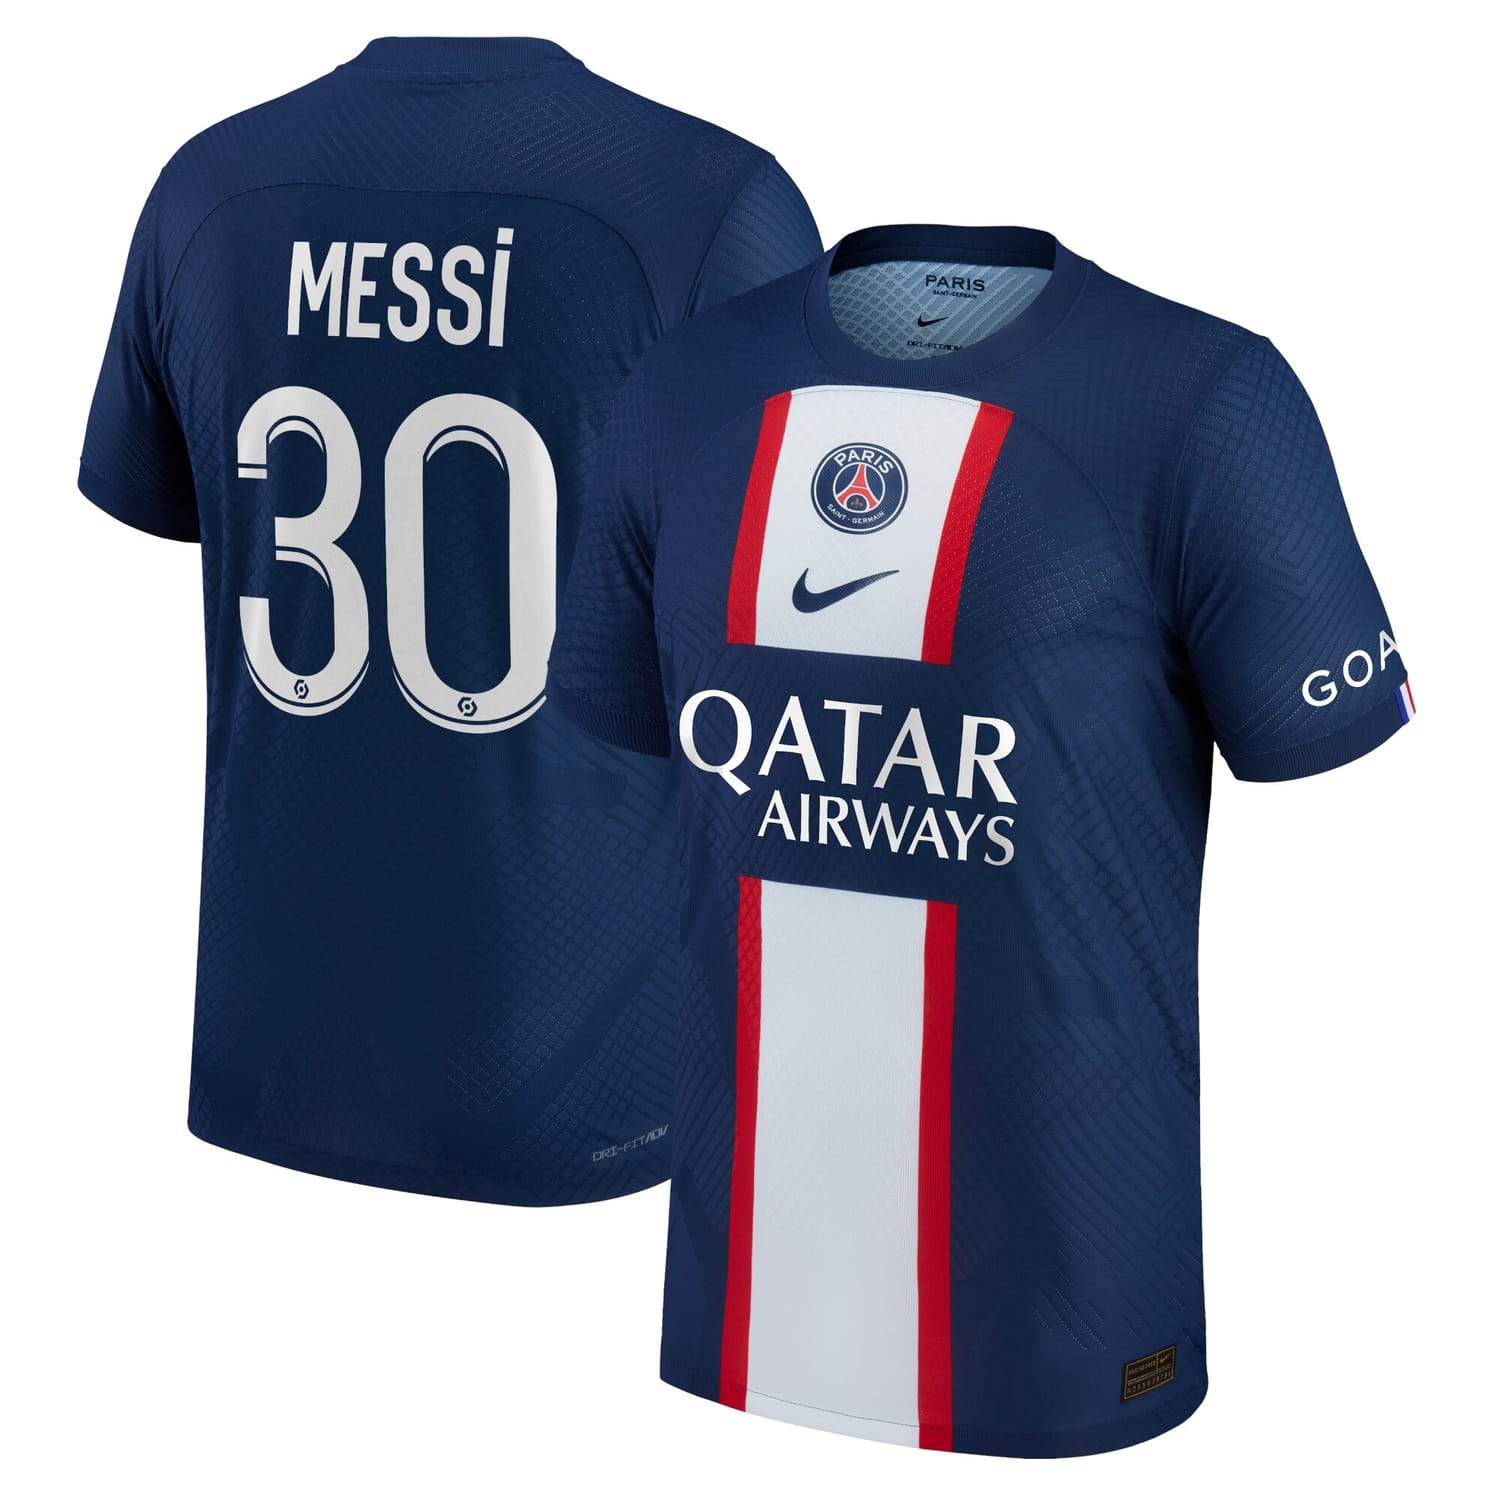 Ligue 1 Paris Saint-Germain Home Authentic Jersey Shirt Blue 2022-23 player Lionel Messi printing for Men